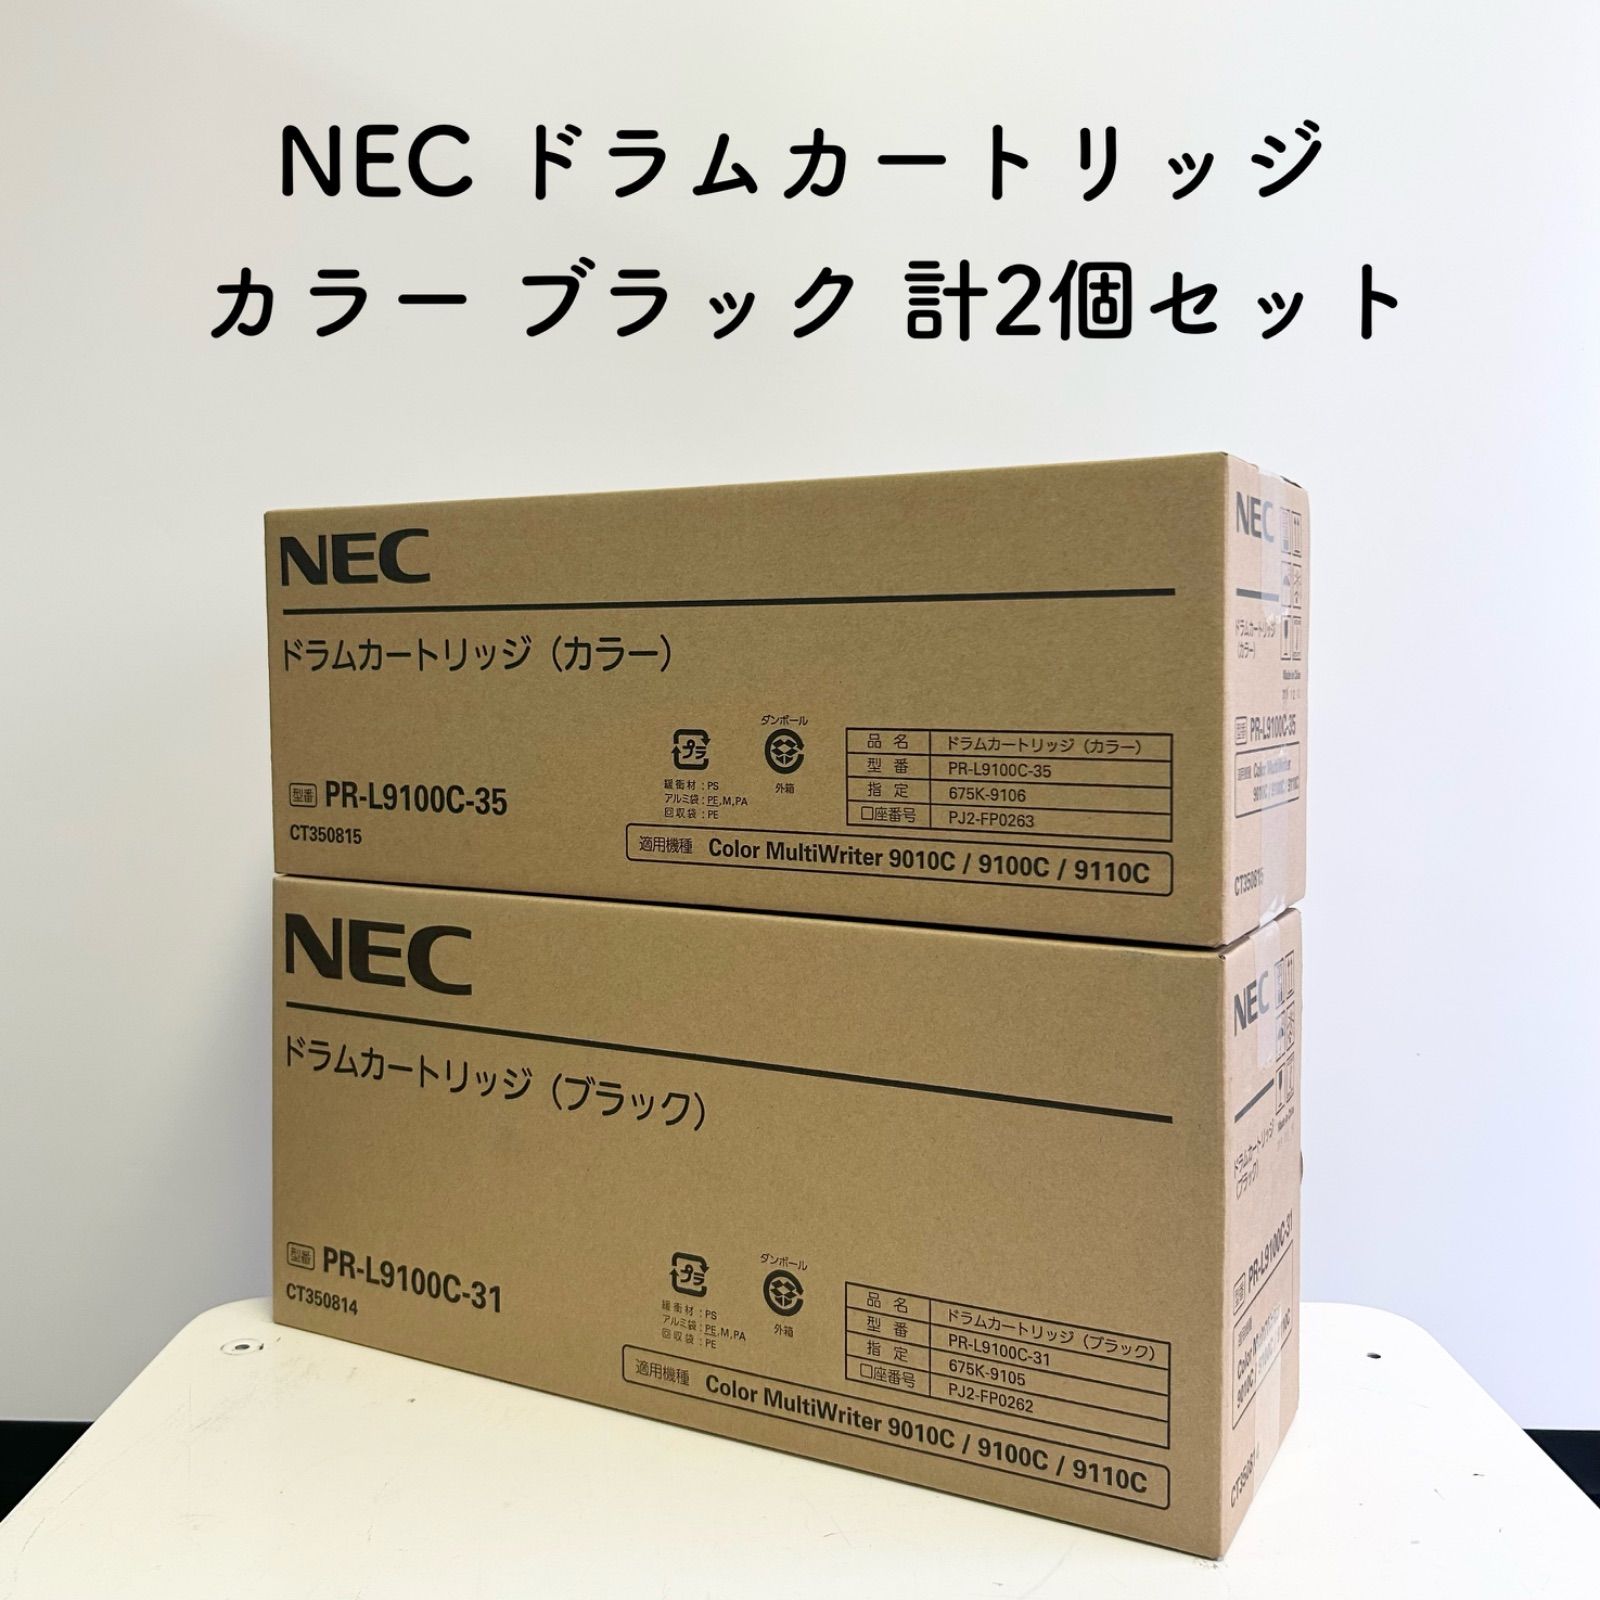 未使用・期限切れ】NEC ドラムカートリッジ ブラック カラー PR-L9100C-35 PR-L9100C-31 計2個セット - メルカリ